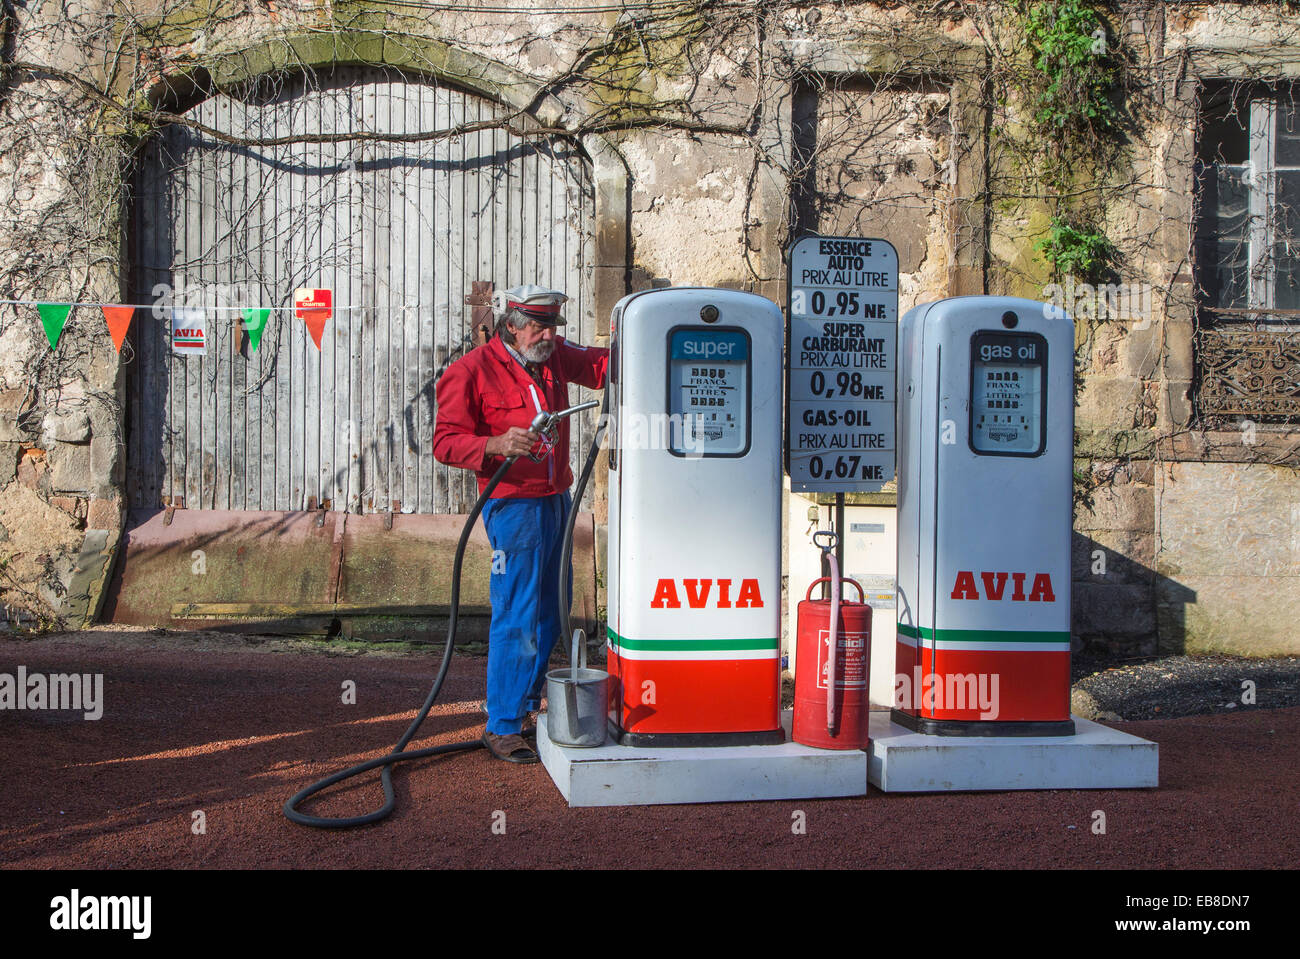 Les pompes à essence Avia antique et un préposé de station-service au cours de l'embouteillage de la Route Nationale 7 à Lapalisse, France Banque D'Images